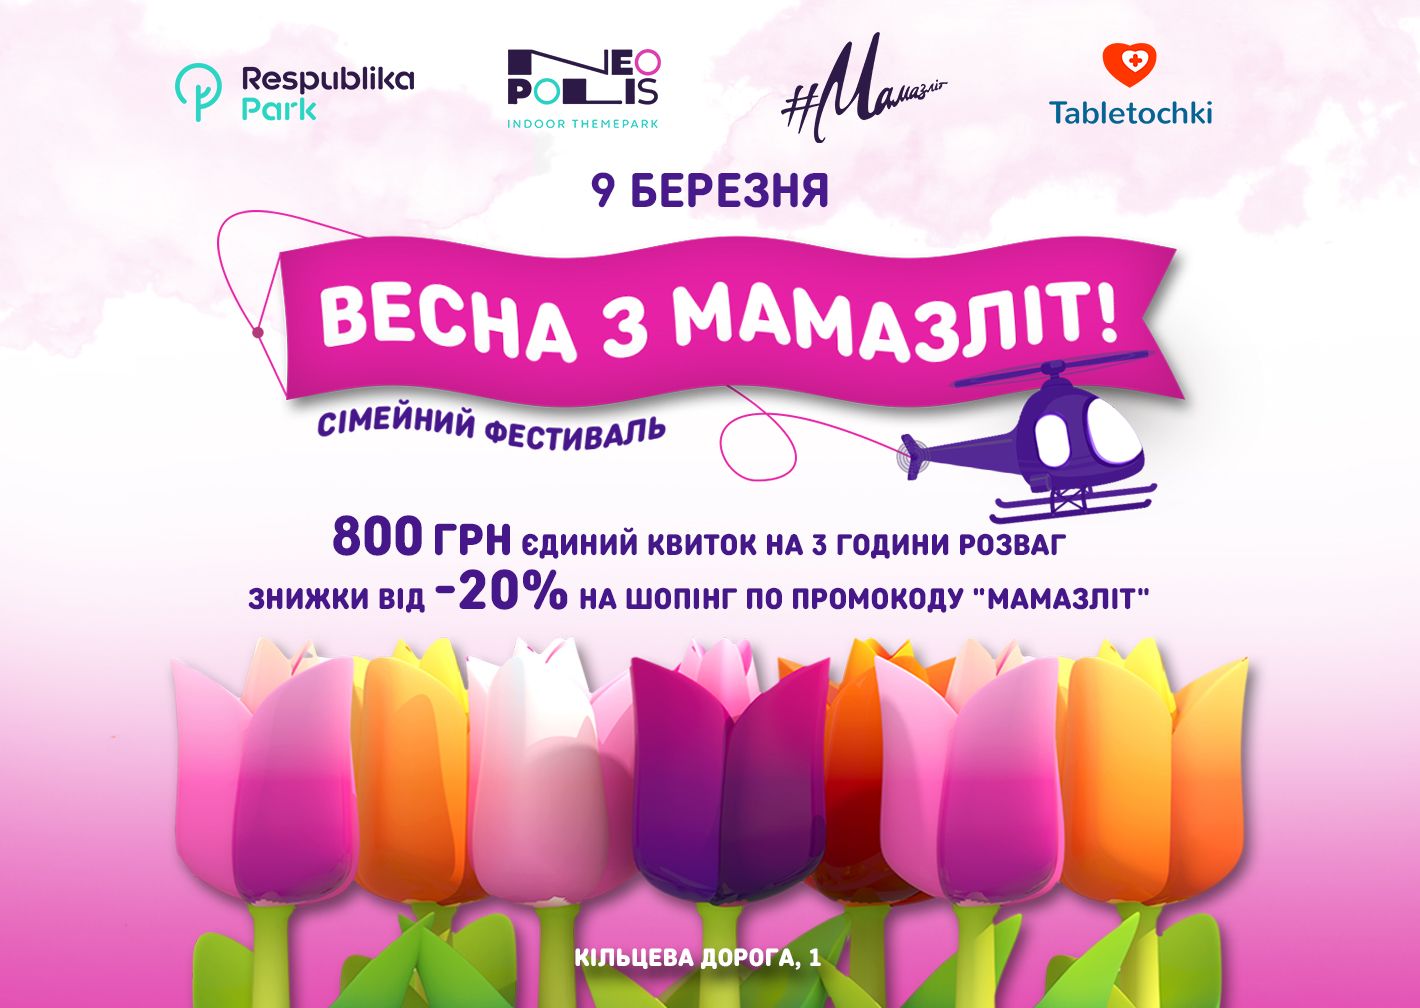 9 березня - сімейний фестиваль "Весна з Мамазліт" в ТРЦ Respublika Park! Thumbnail